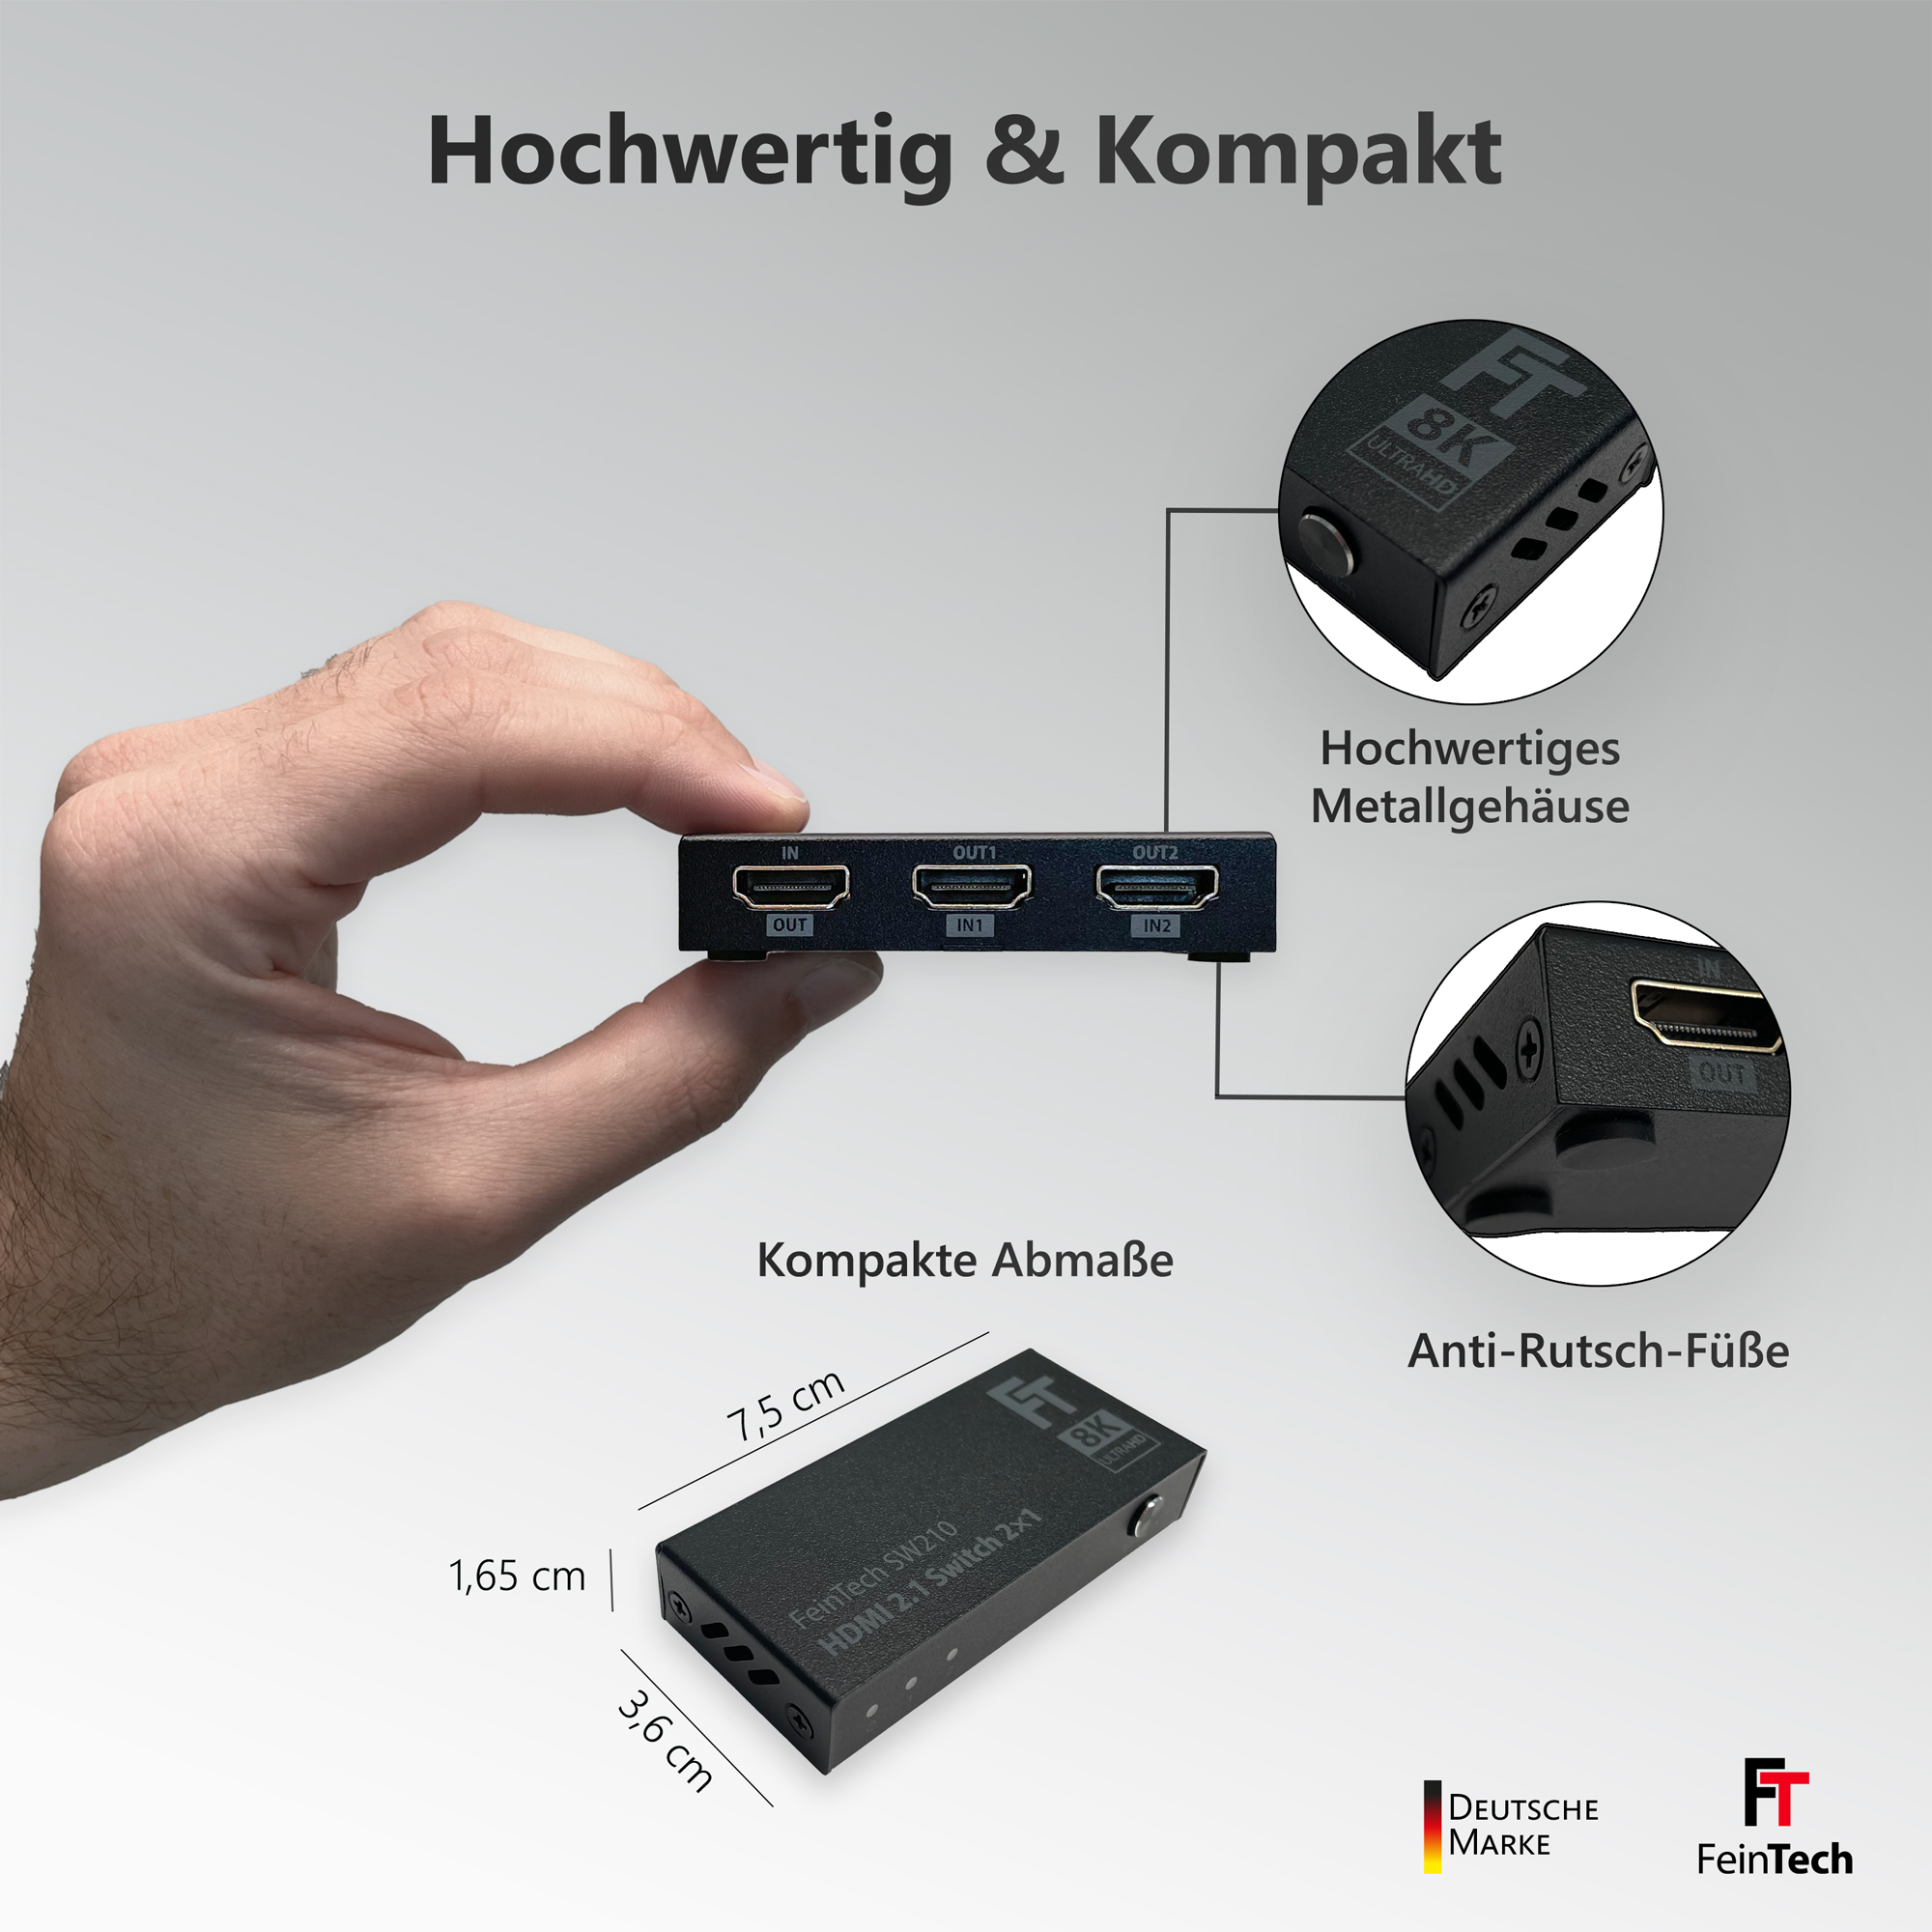 4K HDMI-Switch FEINTECH 120Hz 8K SW210